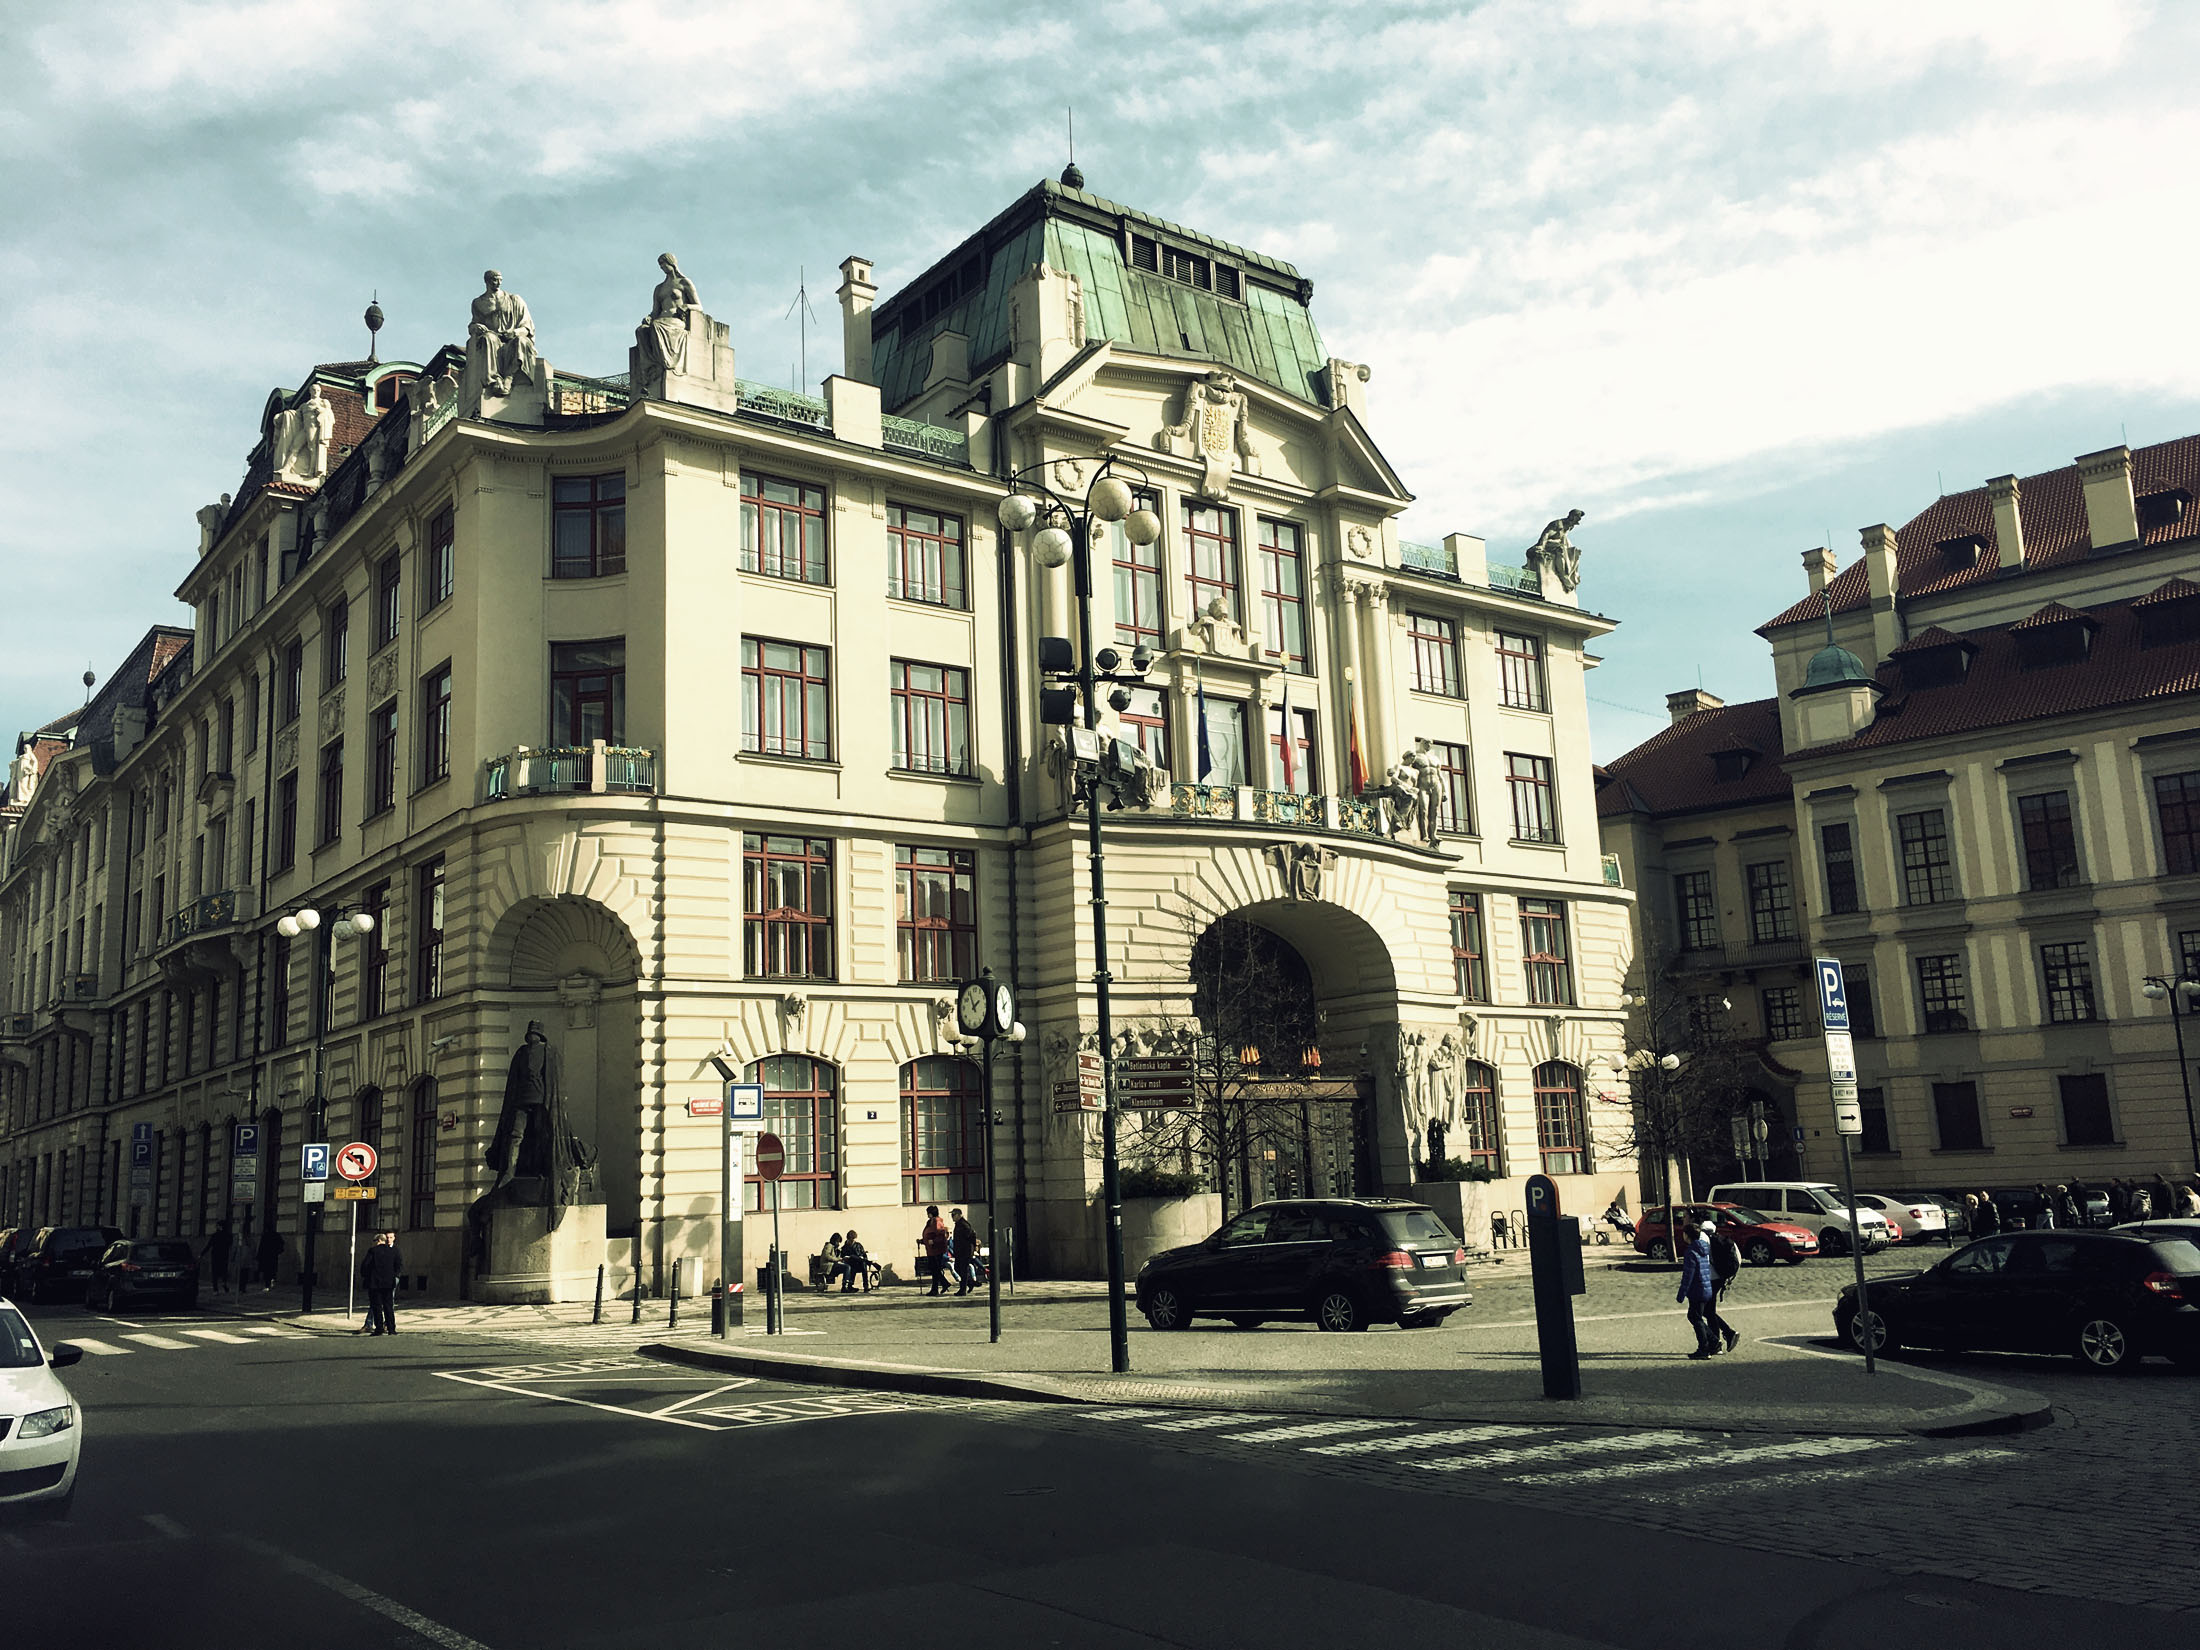 Prague City Hall